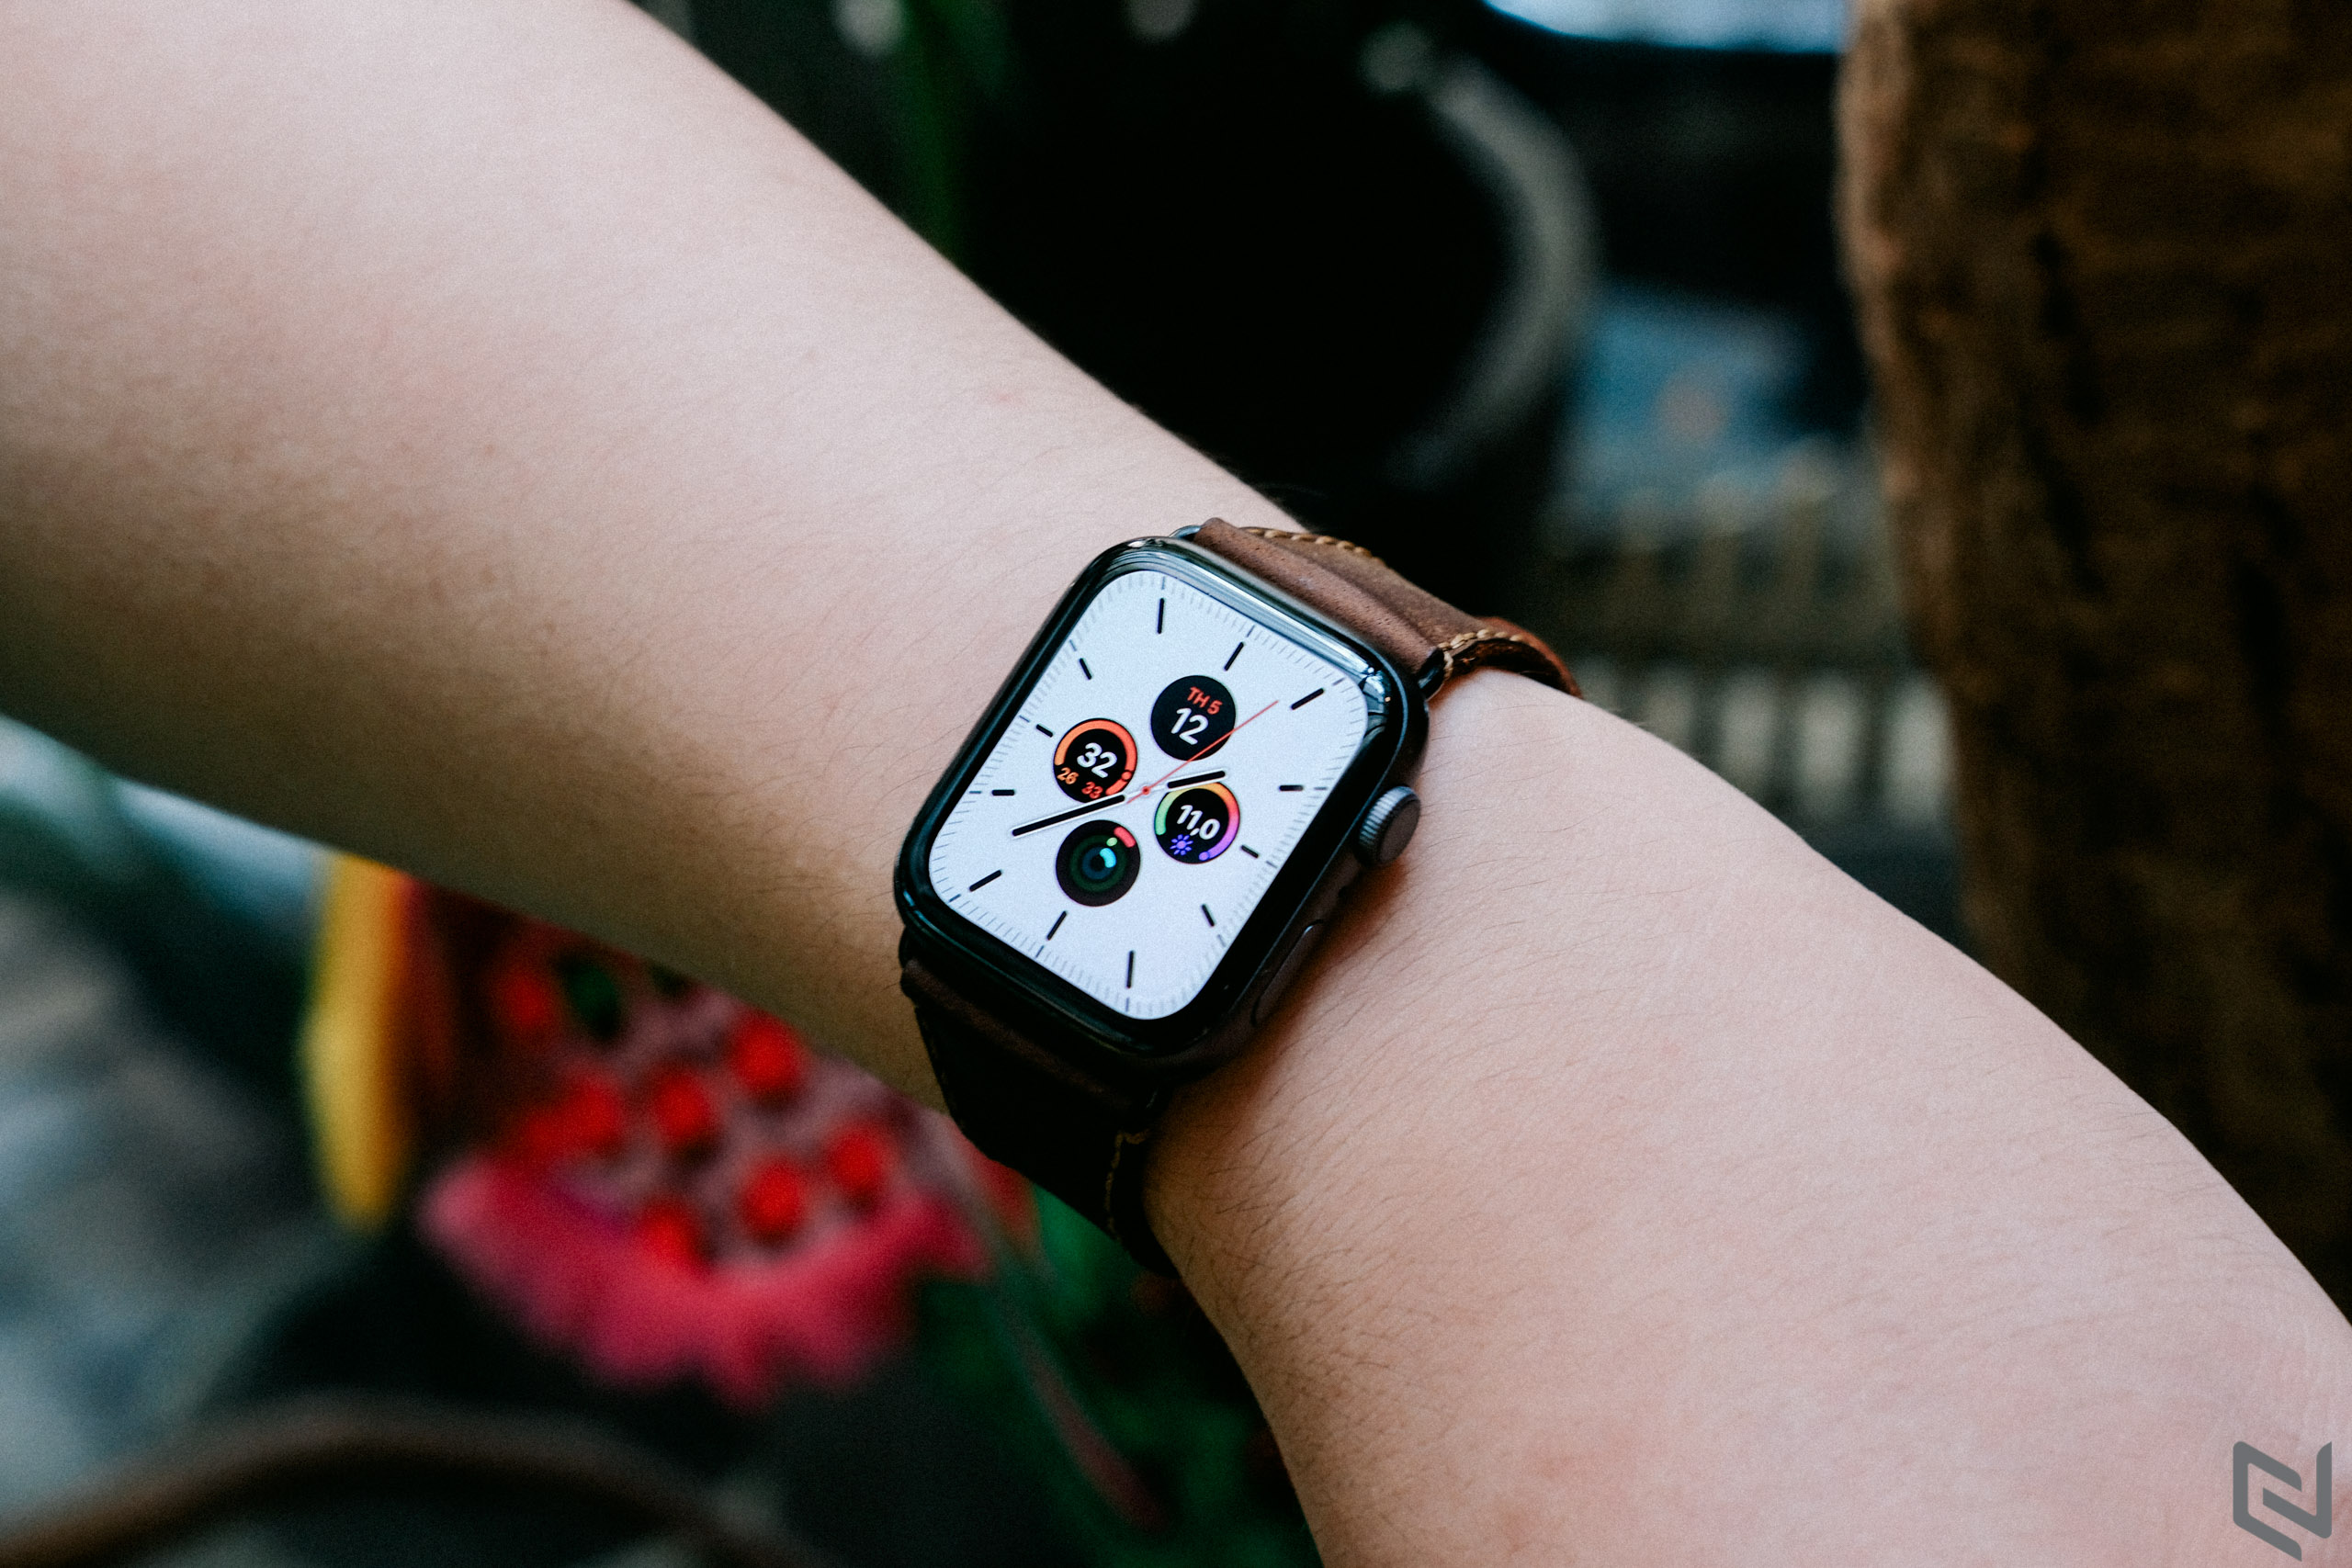 Apple tung cập nhật watchOS 6 chính thức cho developer trước ngày ra mắt chính thức 19/9